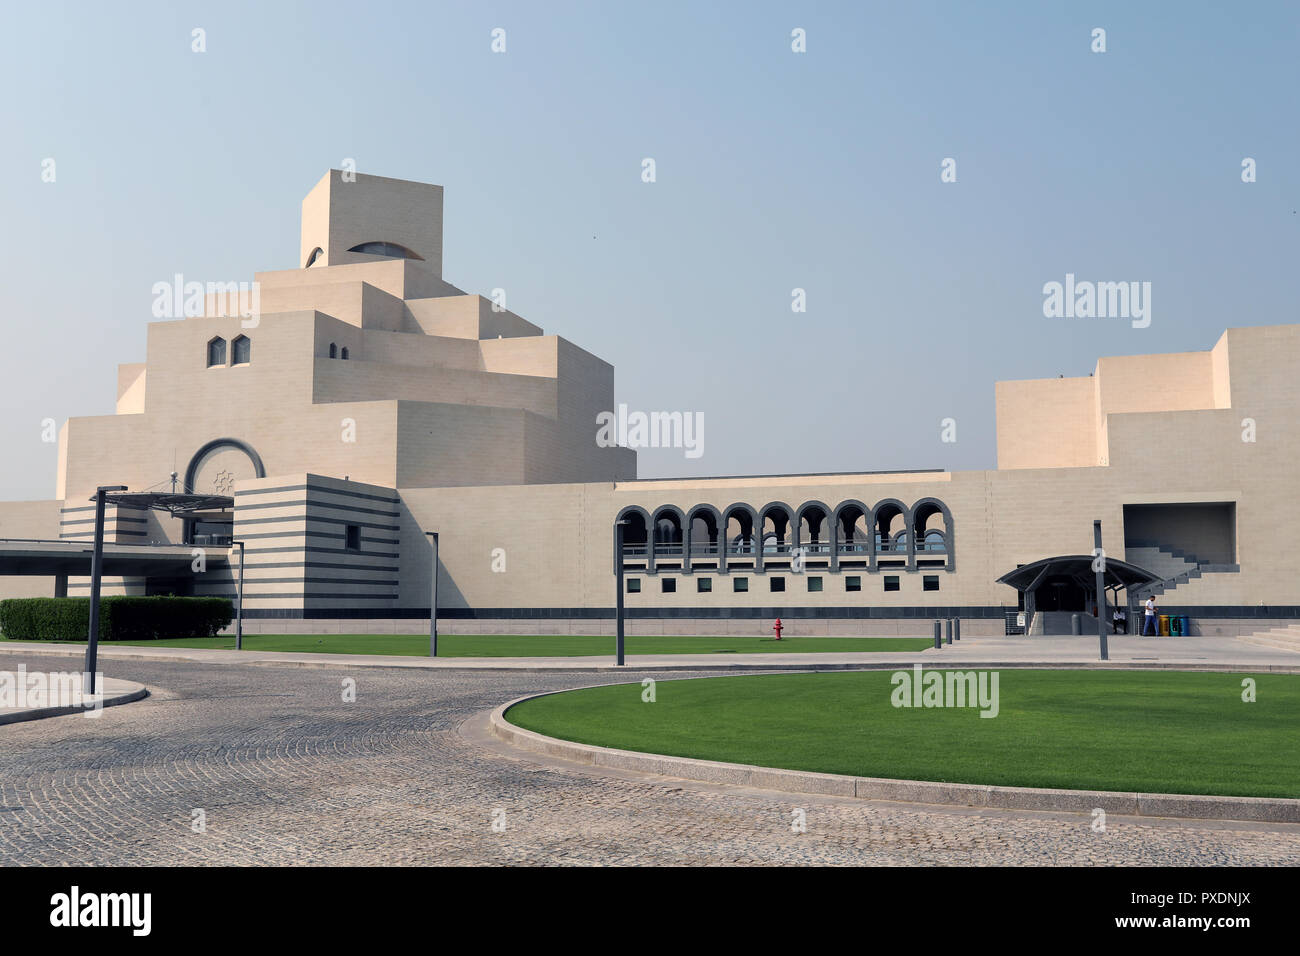 Doha/Katar - Oktober 10, 2018: Die markante Form des Museum für Islamische Kunst in Doha, Katar, entworfen vom Architekten ICH M Pei. Stockfoto